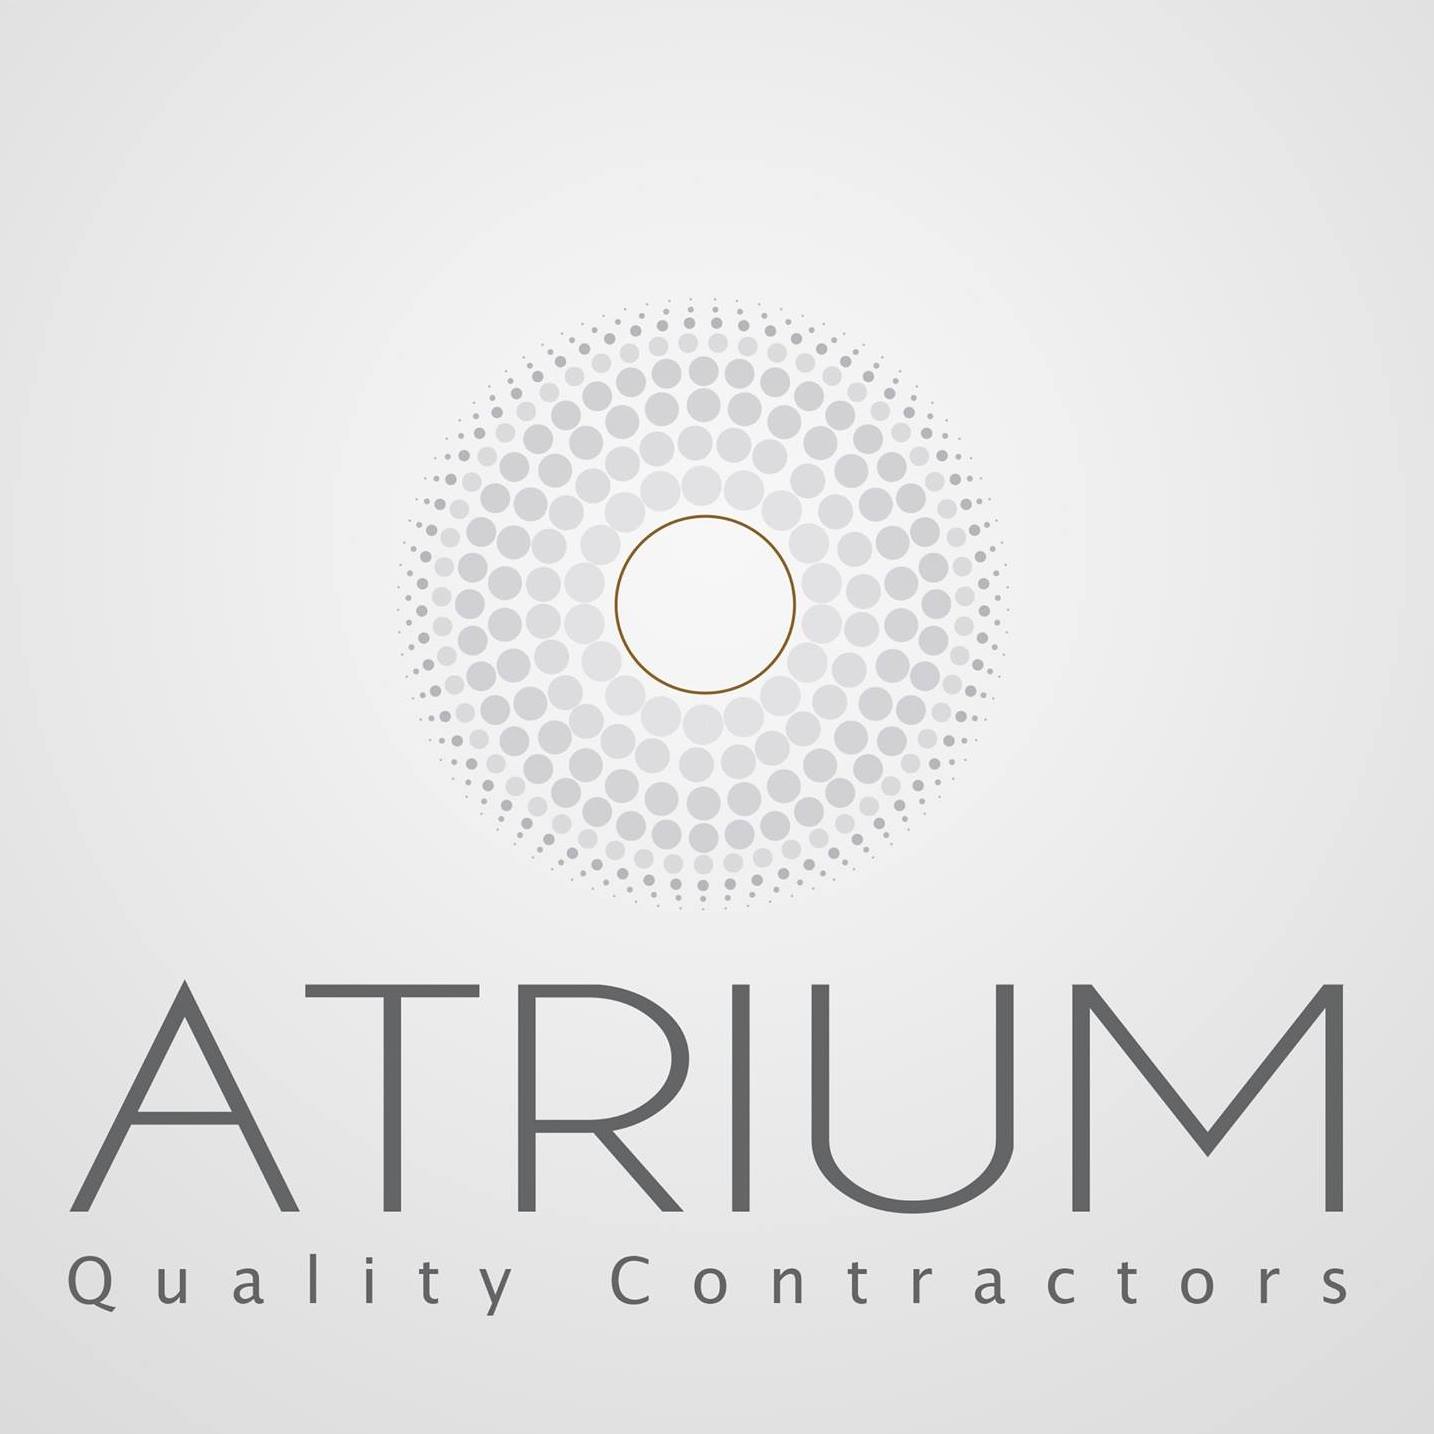 Atrium Quality Contractors